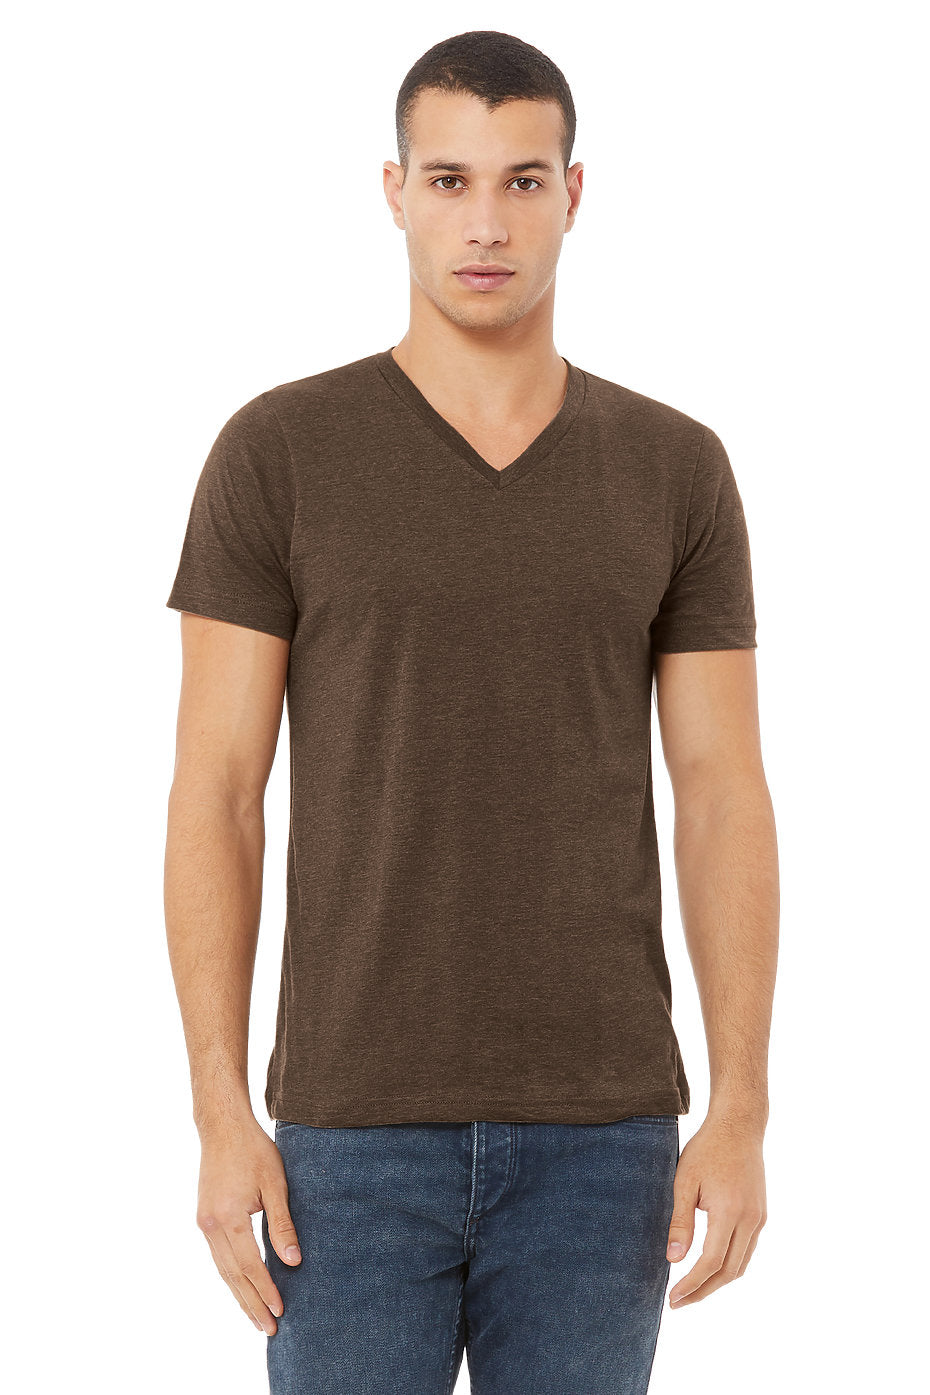 Buy Scoop Neck Tee for Men Deep V Neck T Shirts Short Sleeve Cotton Basic Wide  Neck Online at desertcartPeru